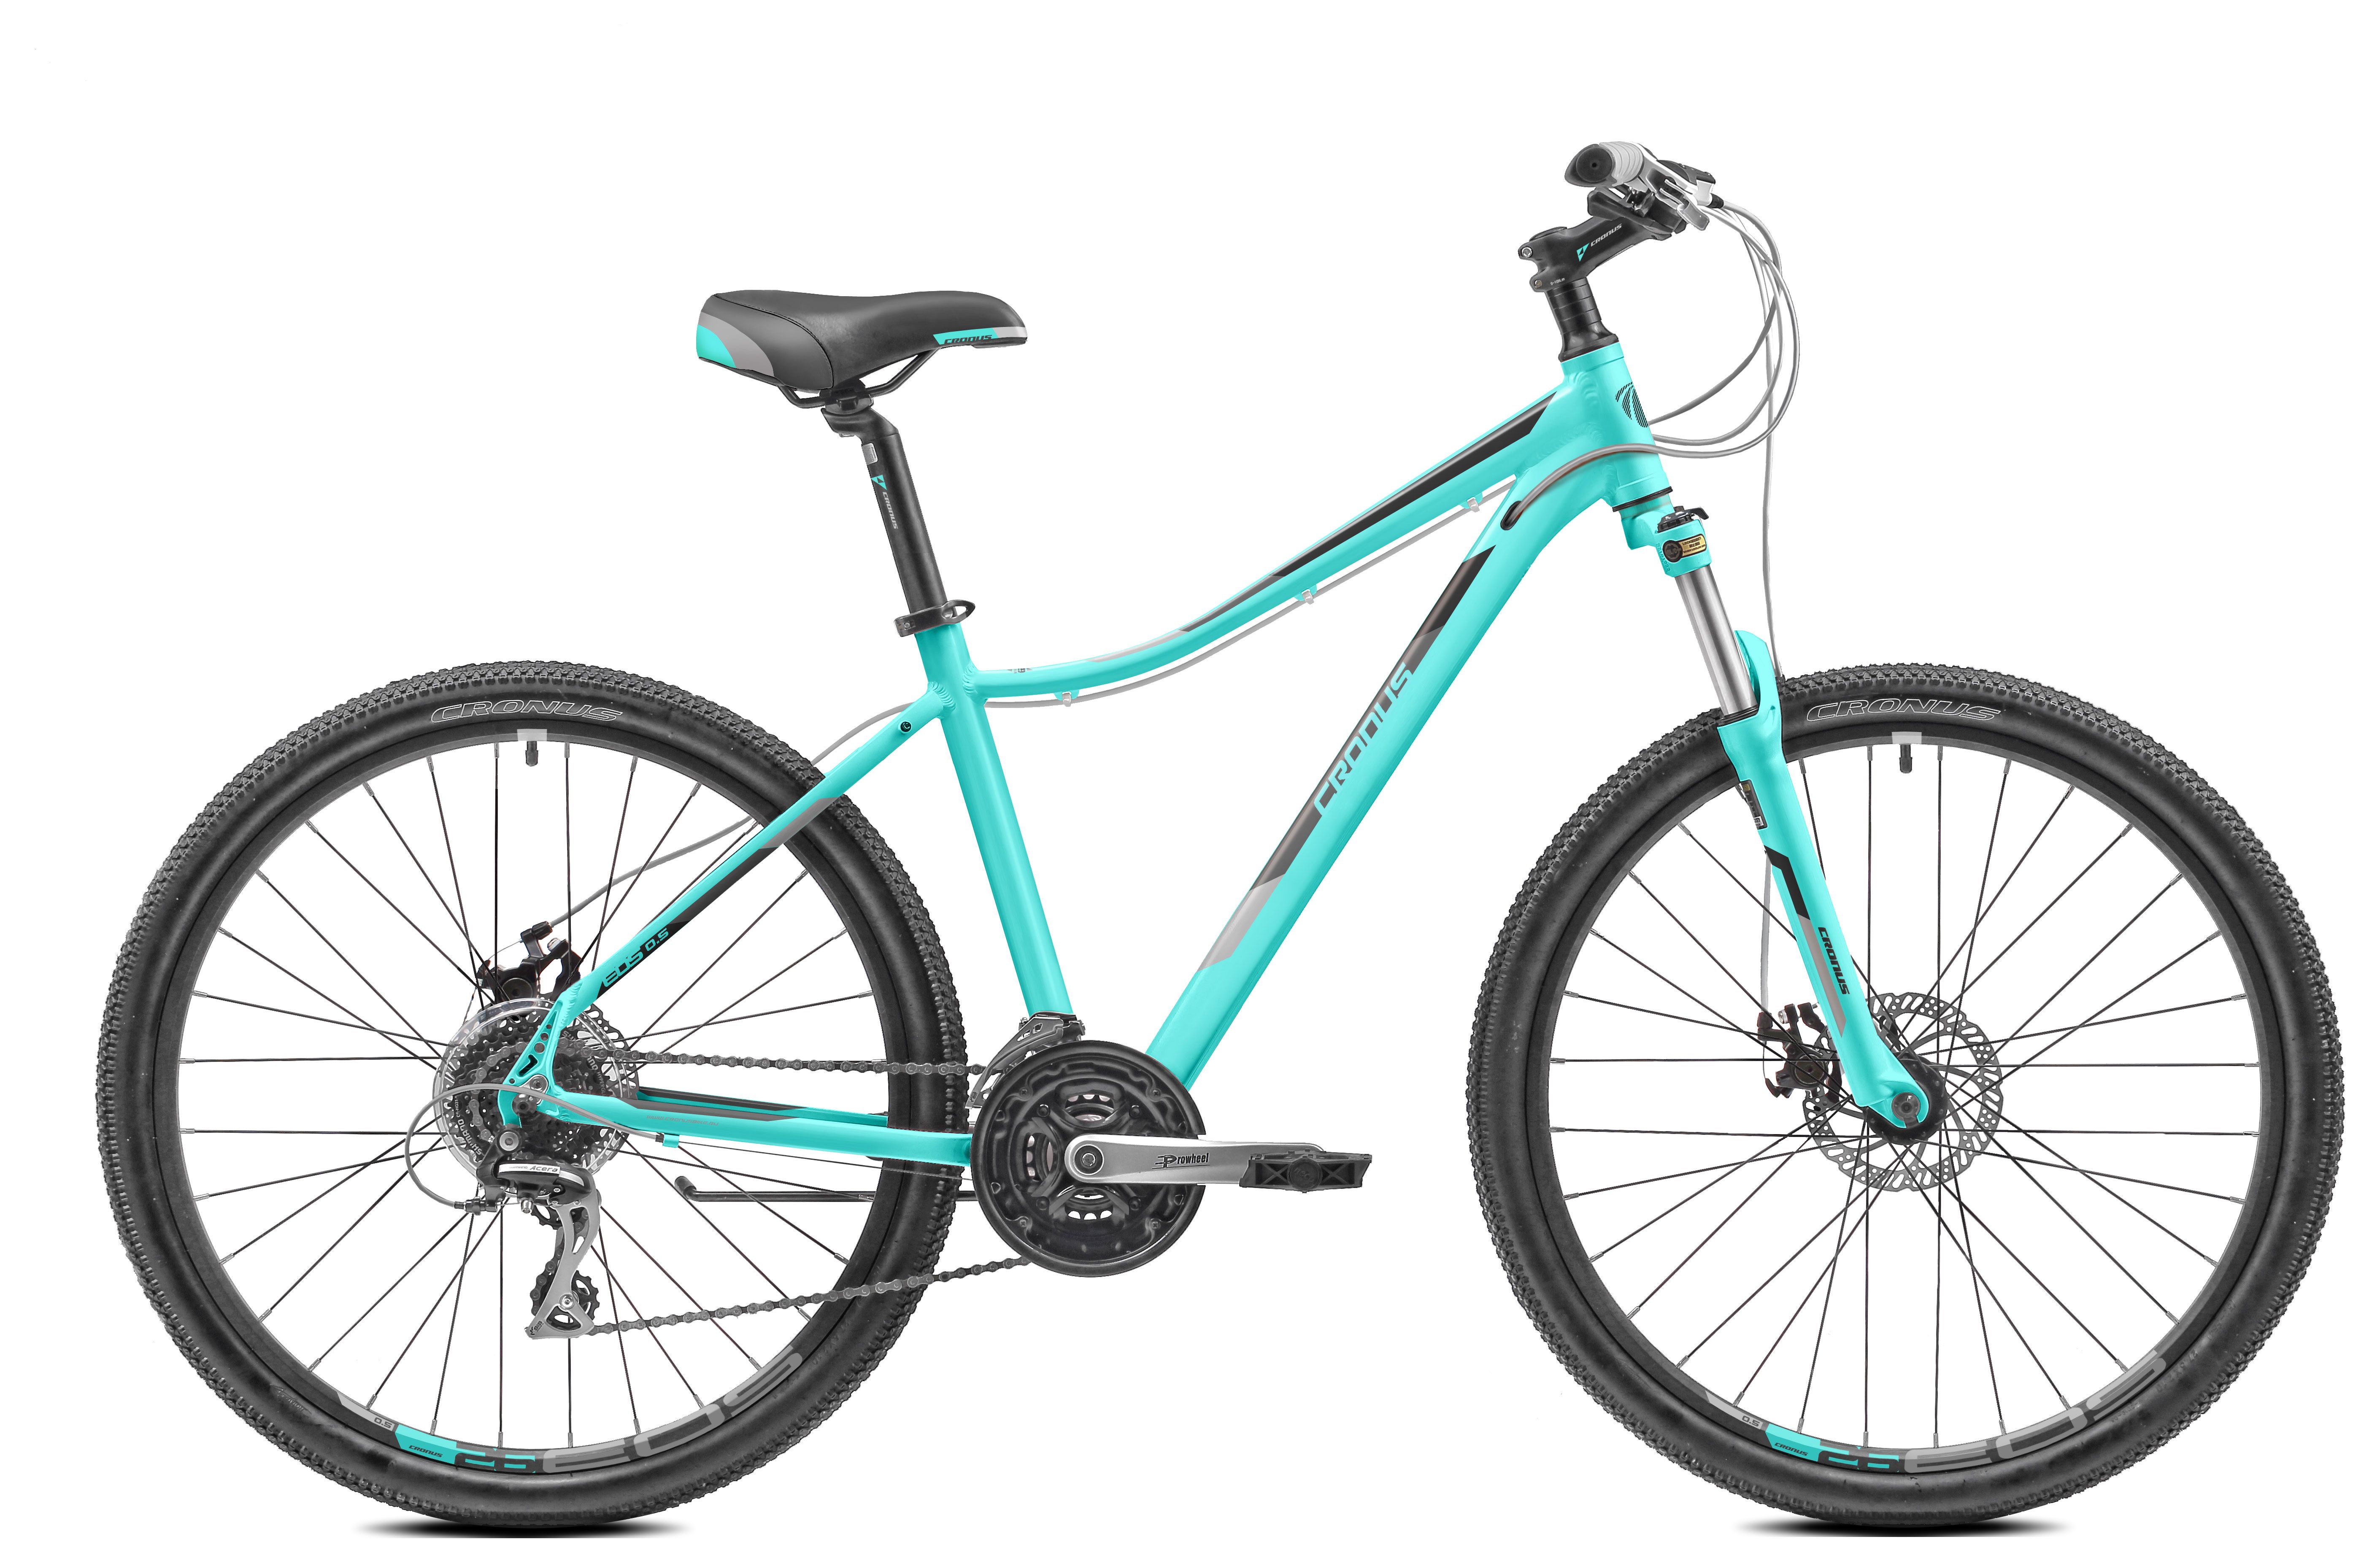  Отзывы о Женском велосипеде Cronus EOS 0.5 26 2018